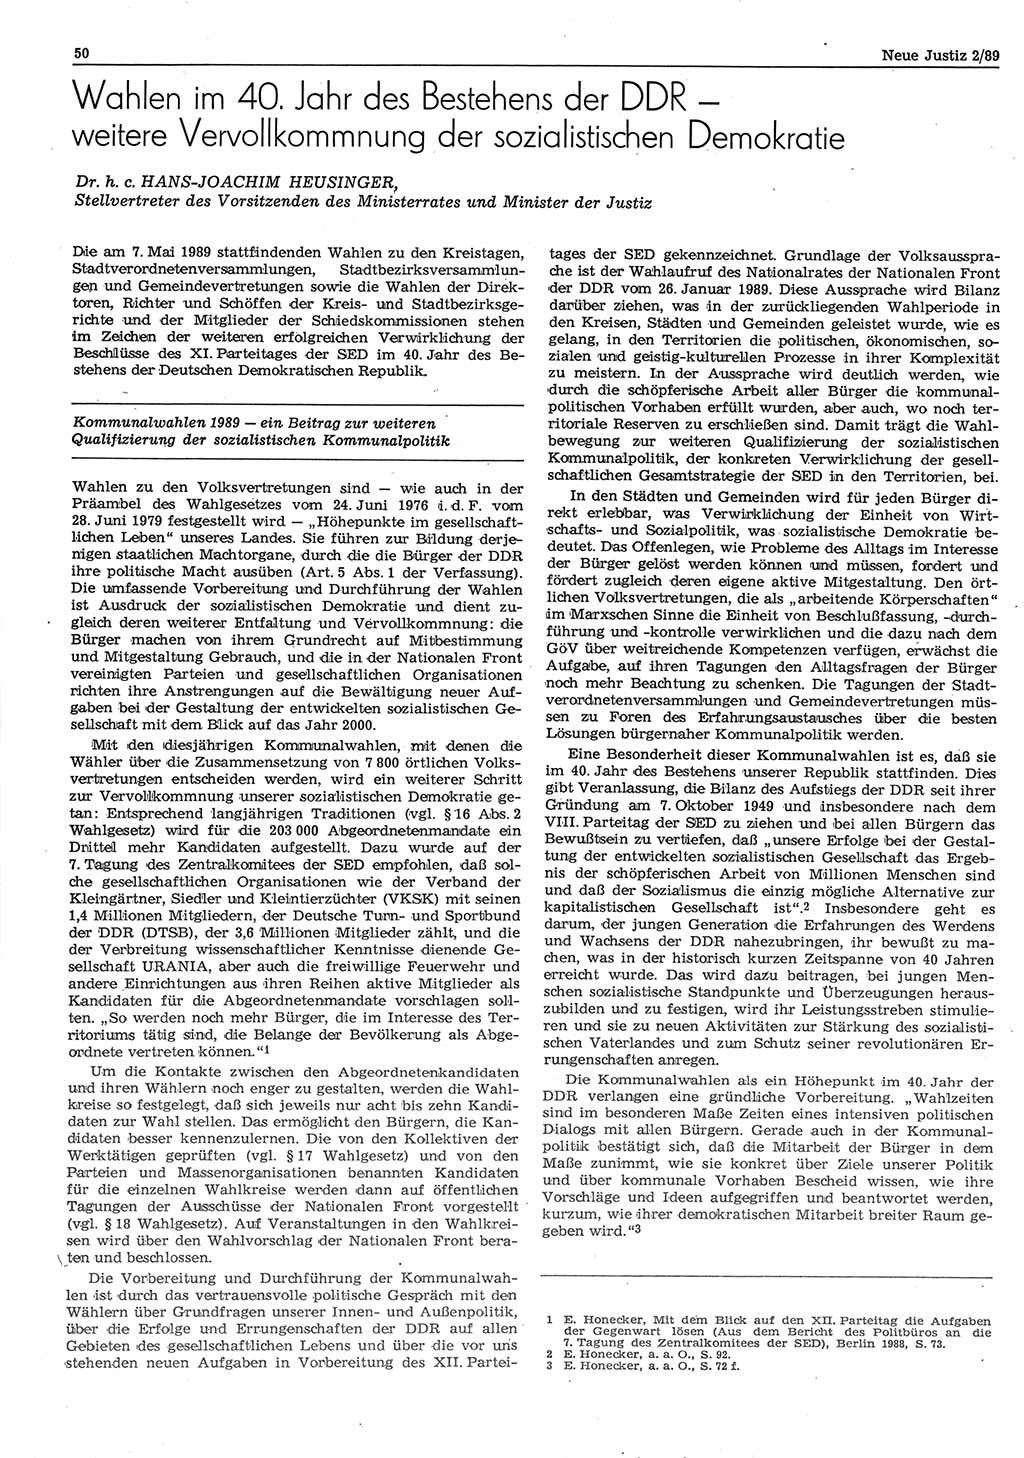 Neue Justiz (NJ), Zeitschrift für sozialistisches Recht und Gesetzlichkeit [Deutsche Demokratische Republik (DDR)], 43. Jahrgang 1989, Seite 50 (NJ DDR 1989, S. 50)